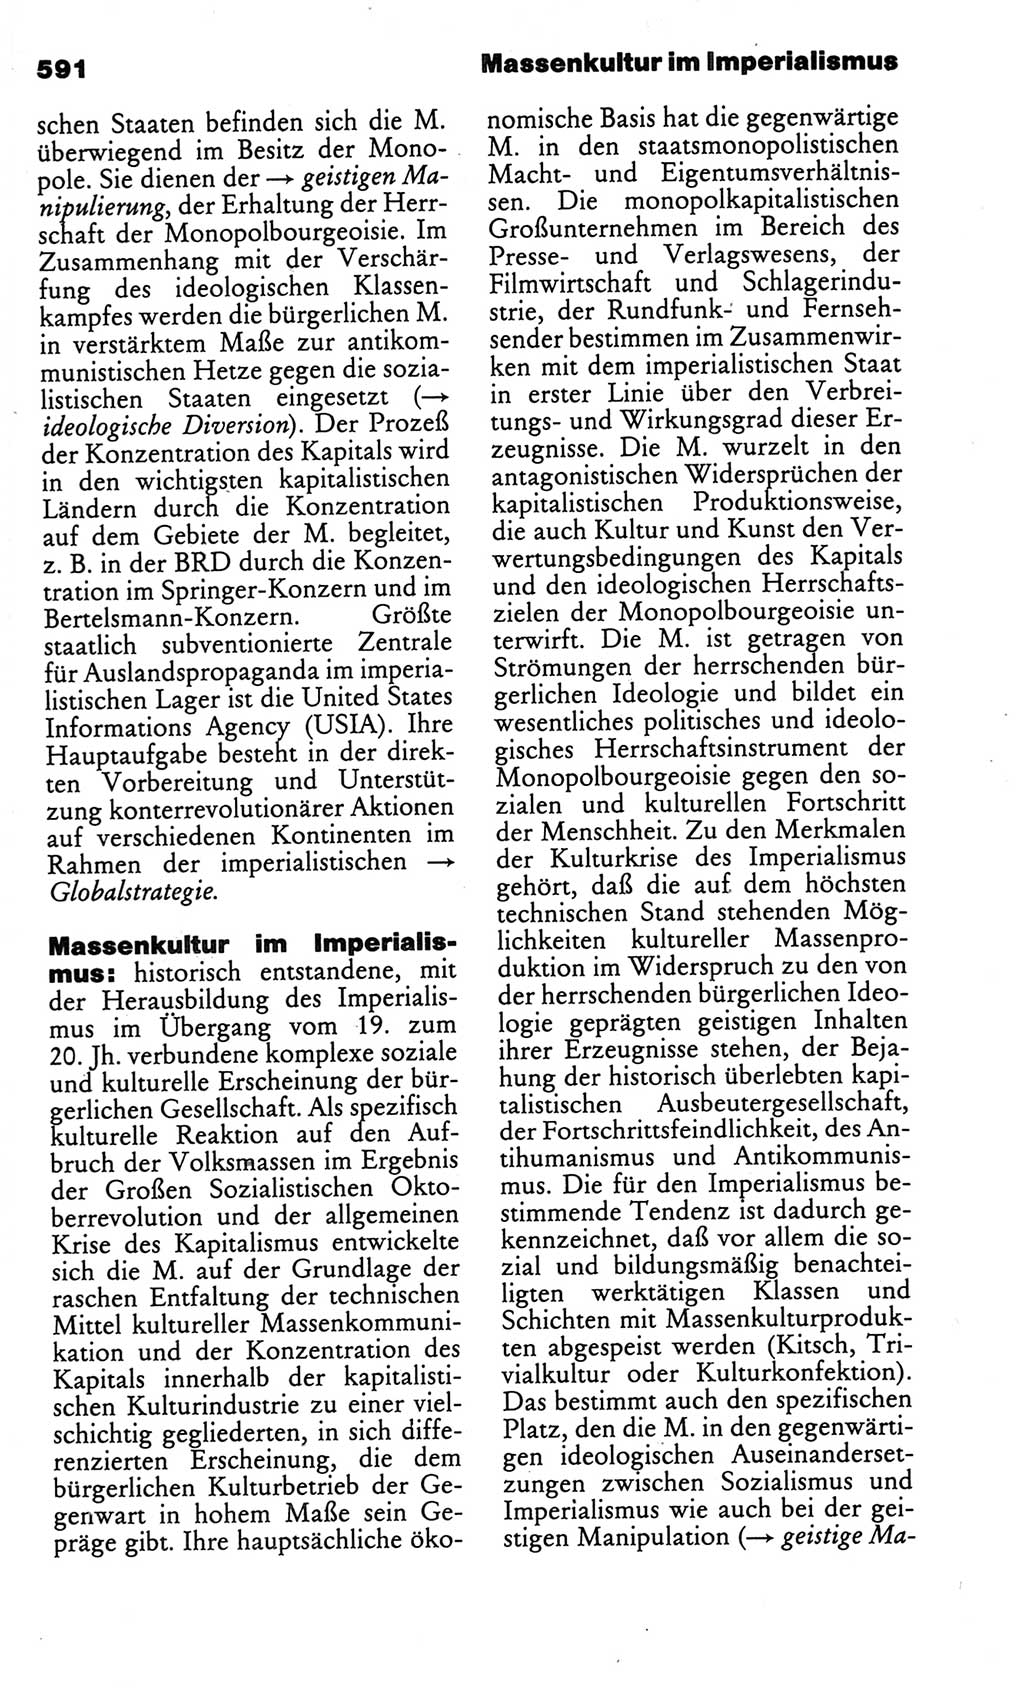 Kleines politisches Wörterbuch [Deutsche Demokratische Republik (DDR)] 1986, Seite 591 (Kl. pol. Wb. DDR 1986, S. 591)